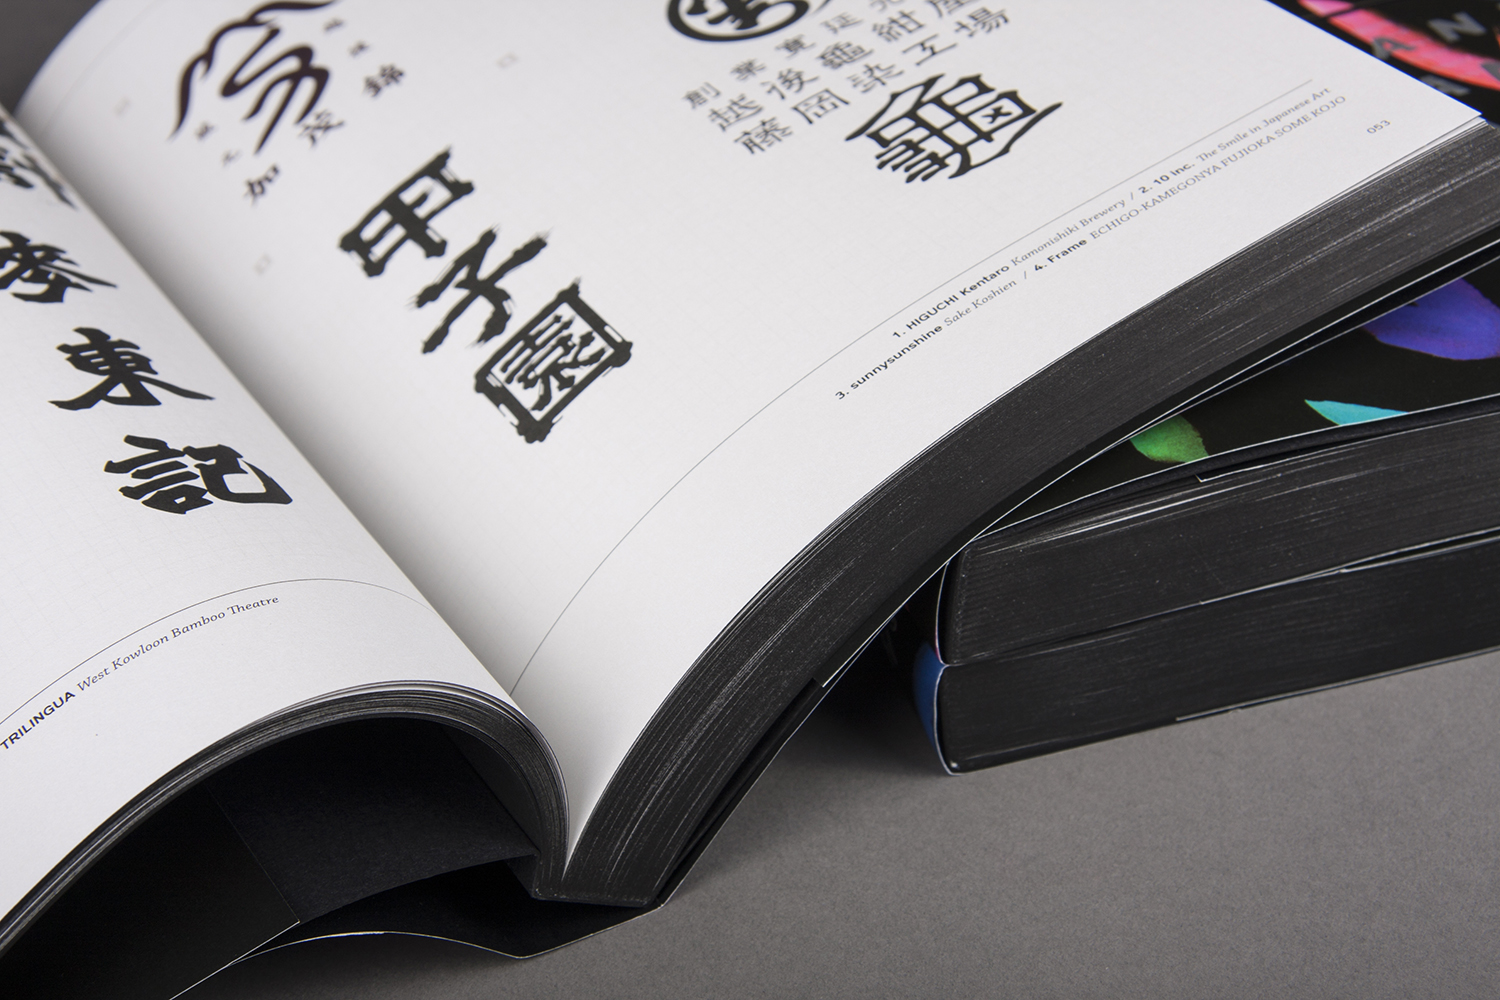 Hanzi- Hanja- Kanji: New Typography with Chinese Characters